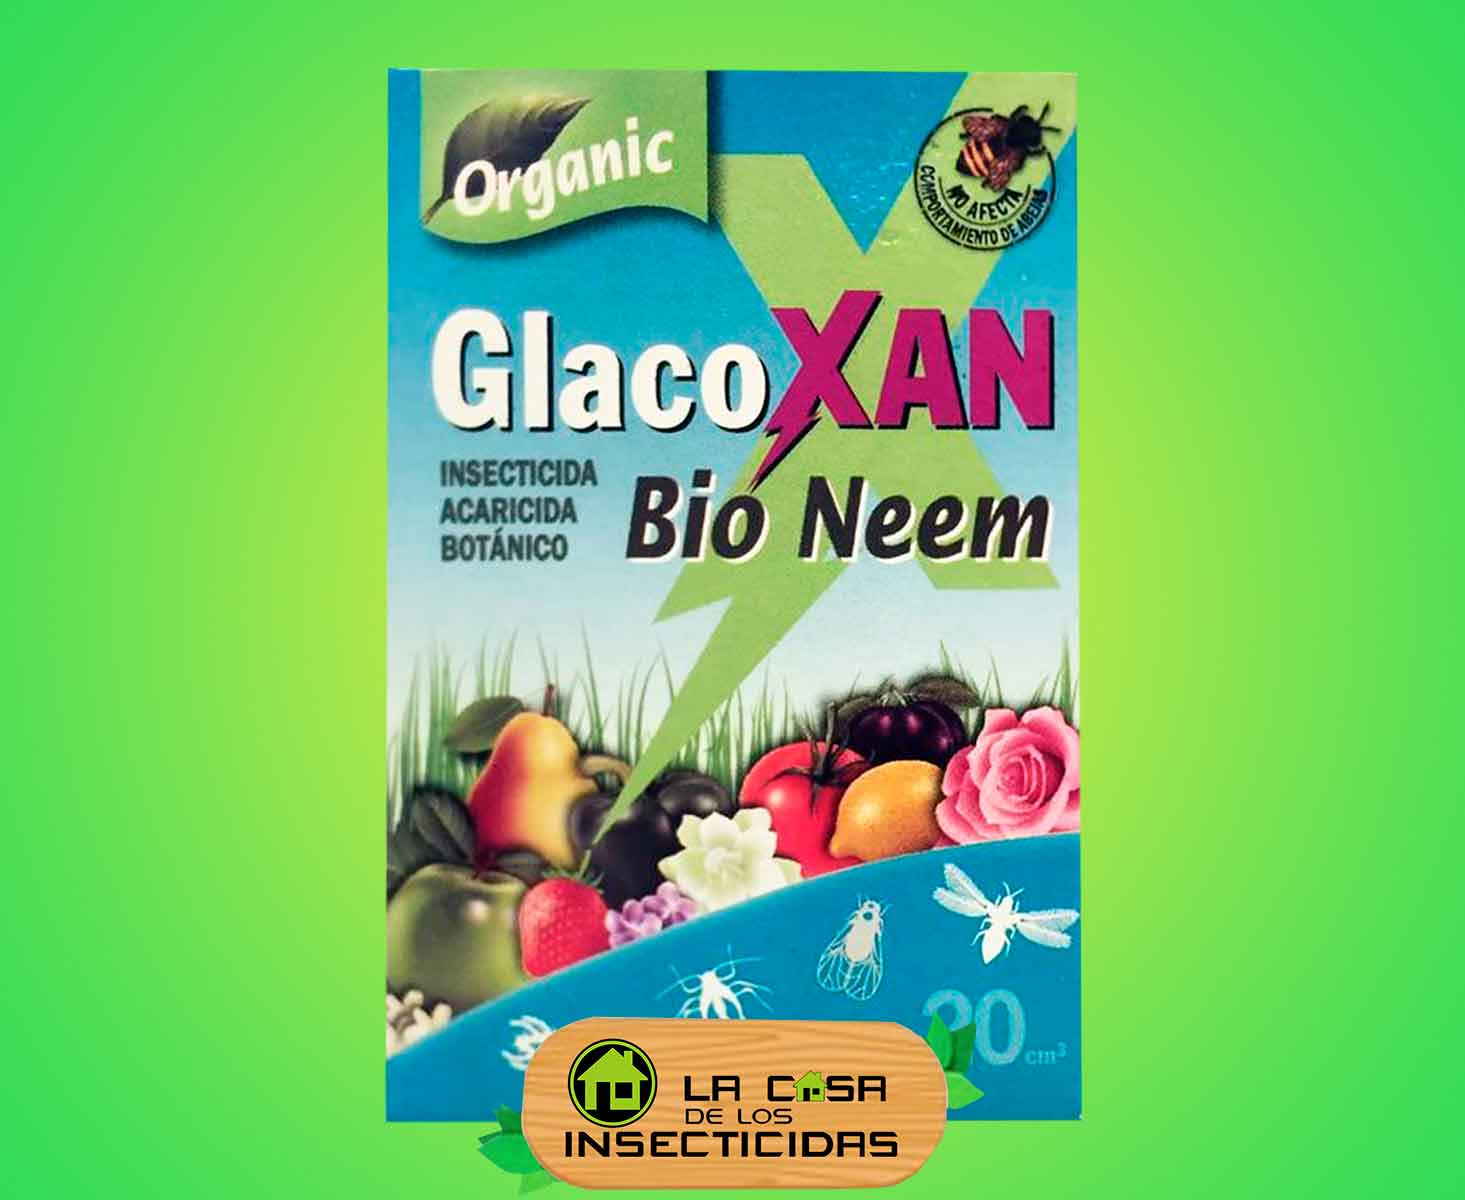 Glacoxan Bio Neem Aceite de Neem Organico.